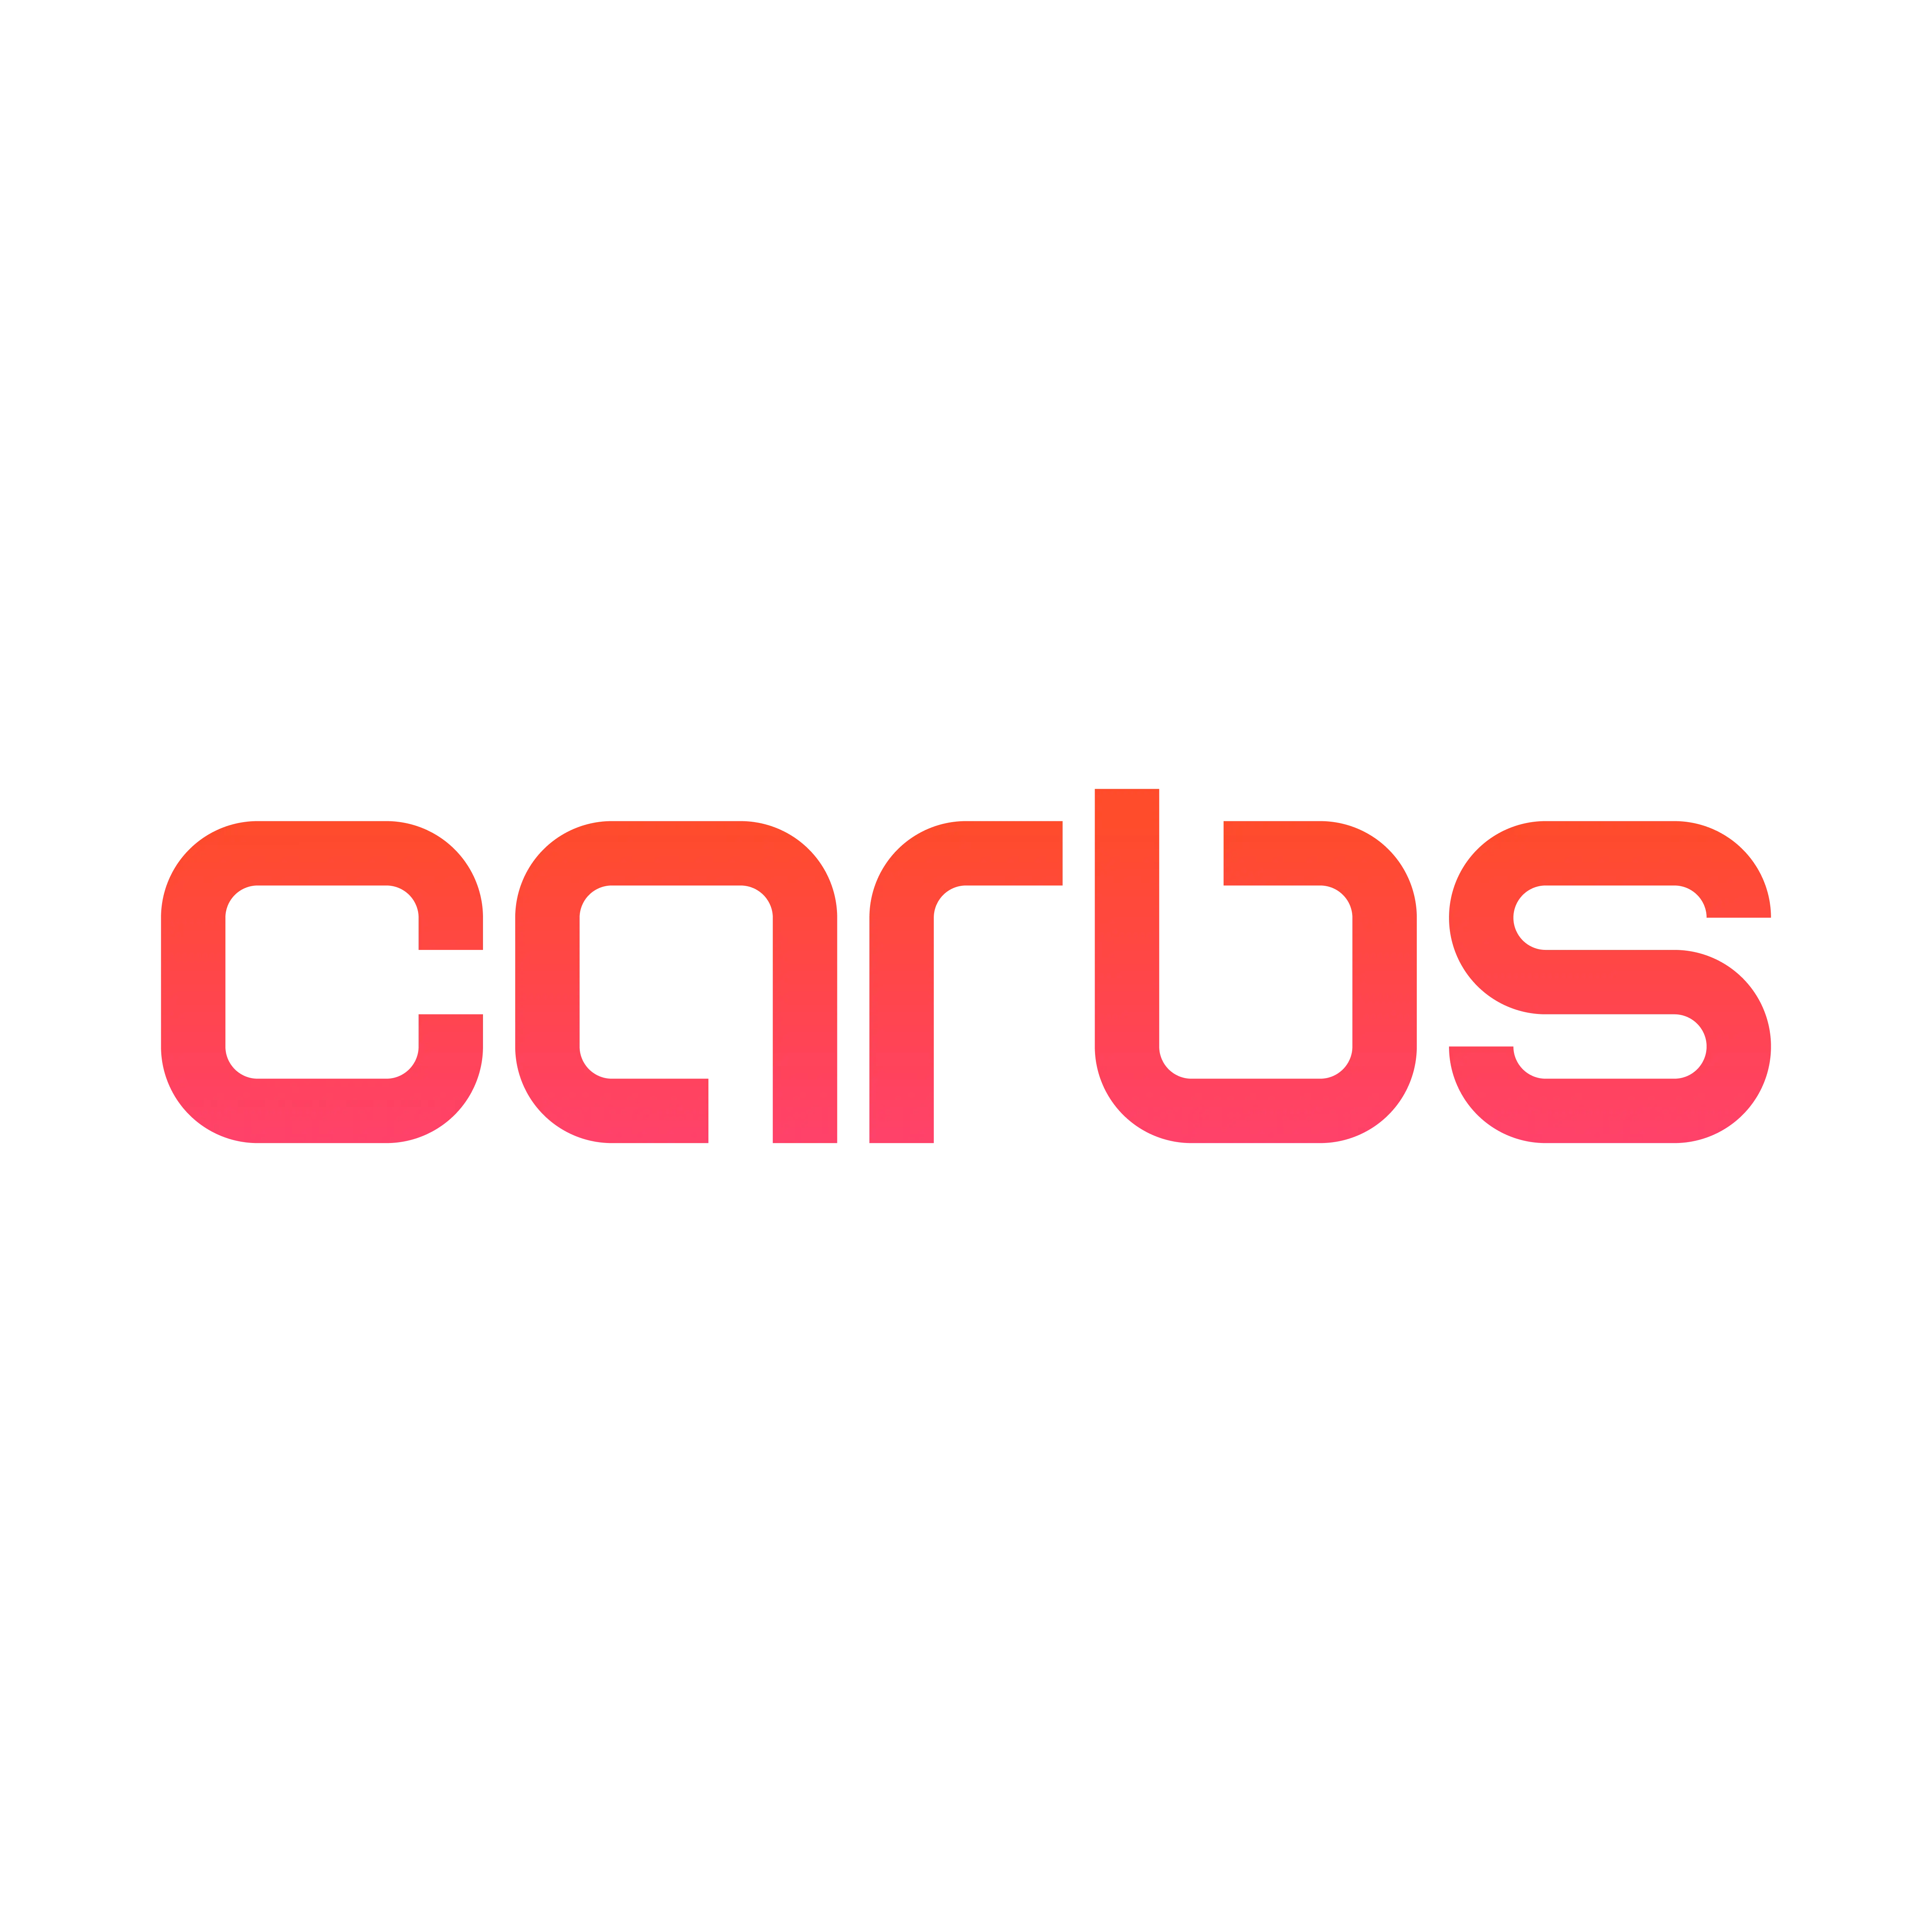 Carbs logo